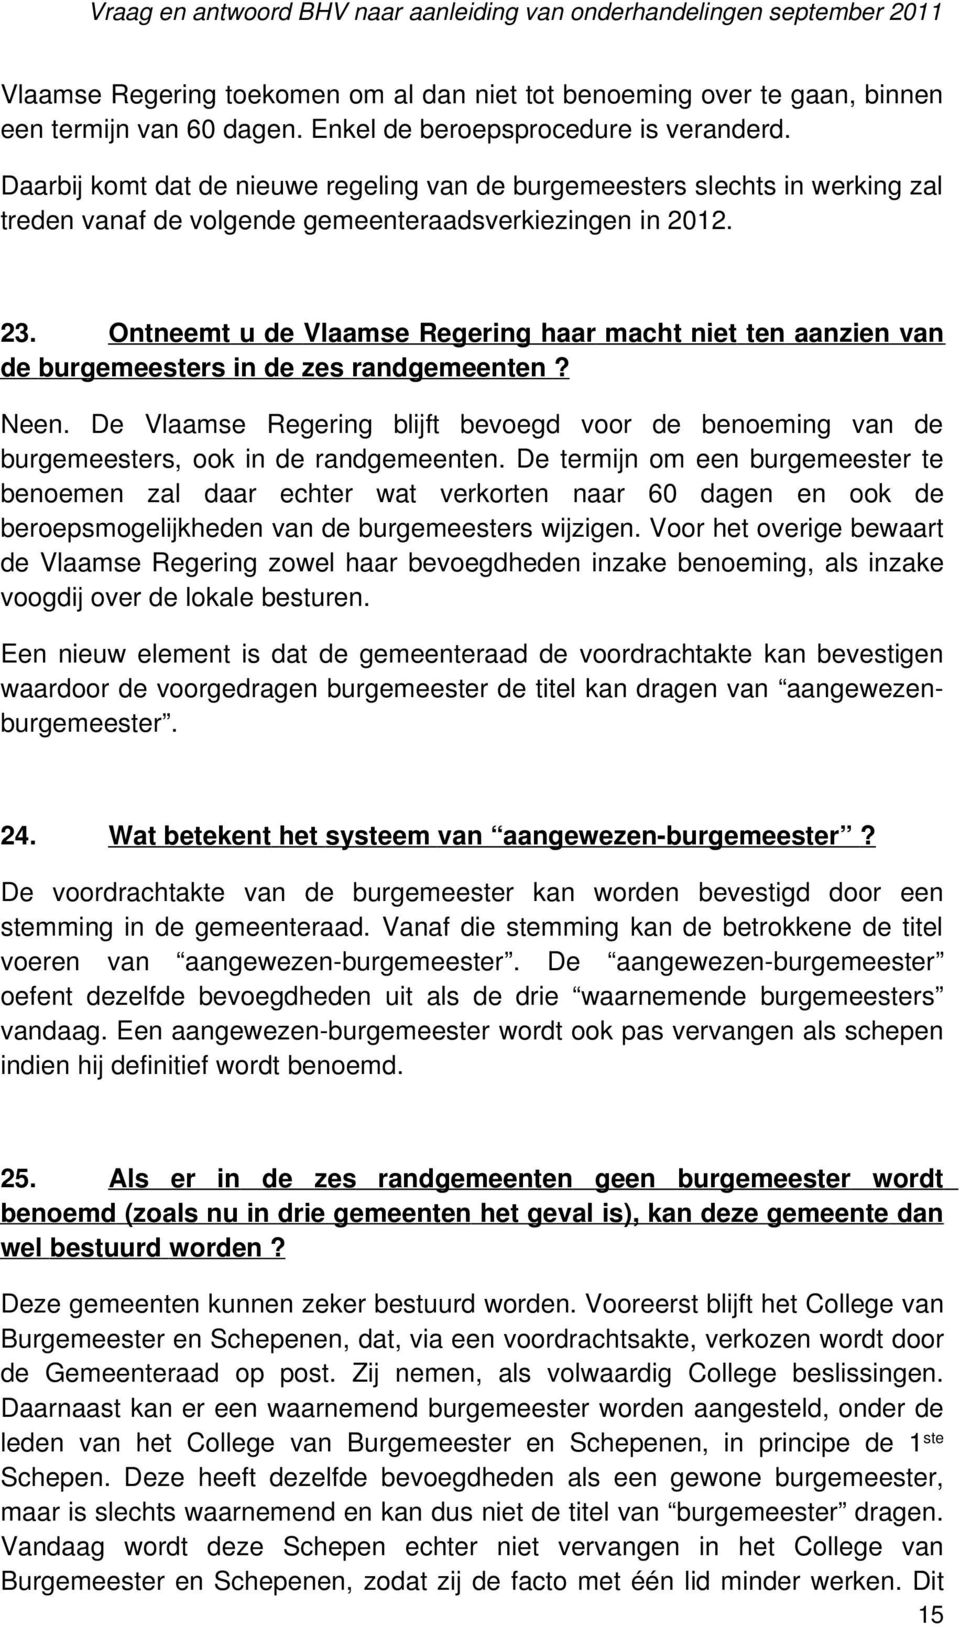 Ontneemt u de Vlaamse Regering haar macht niet ten aanzien van de burgemeesters in de zes randgemeenten? Neen.